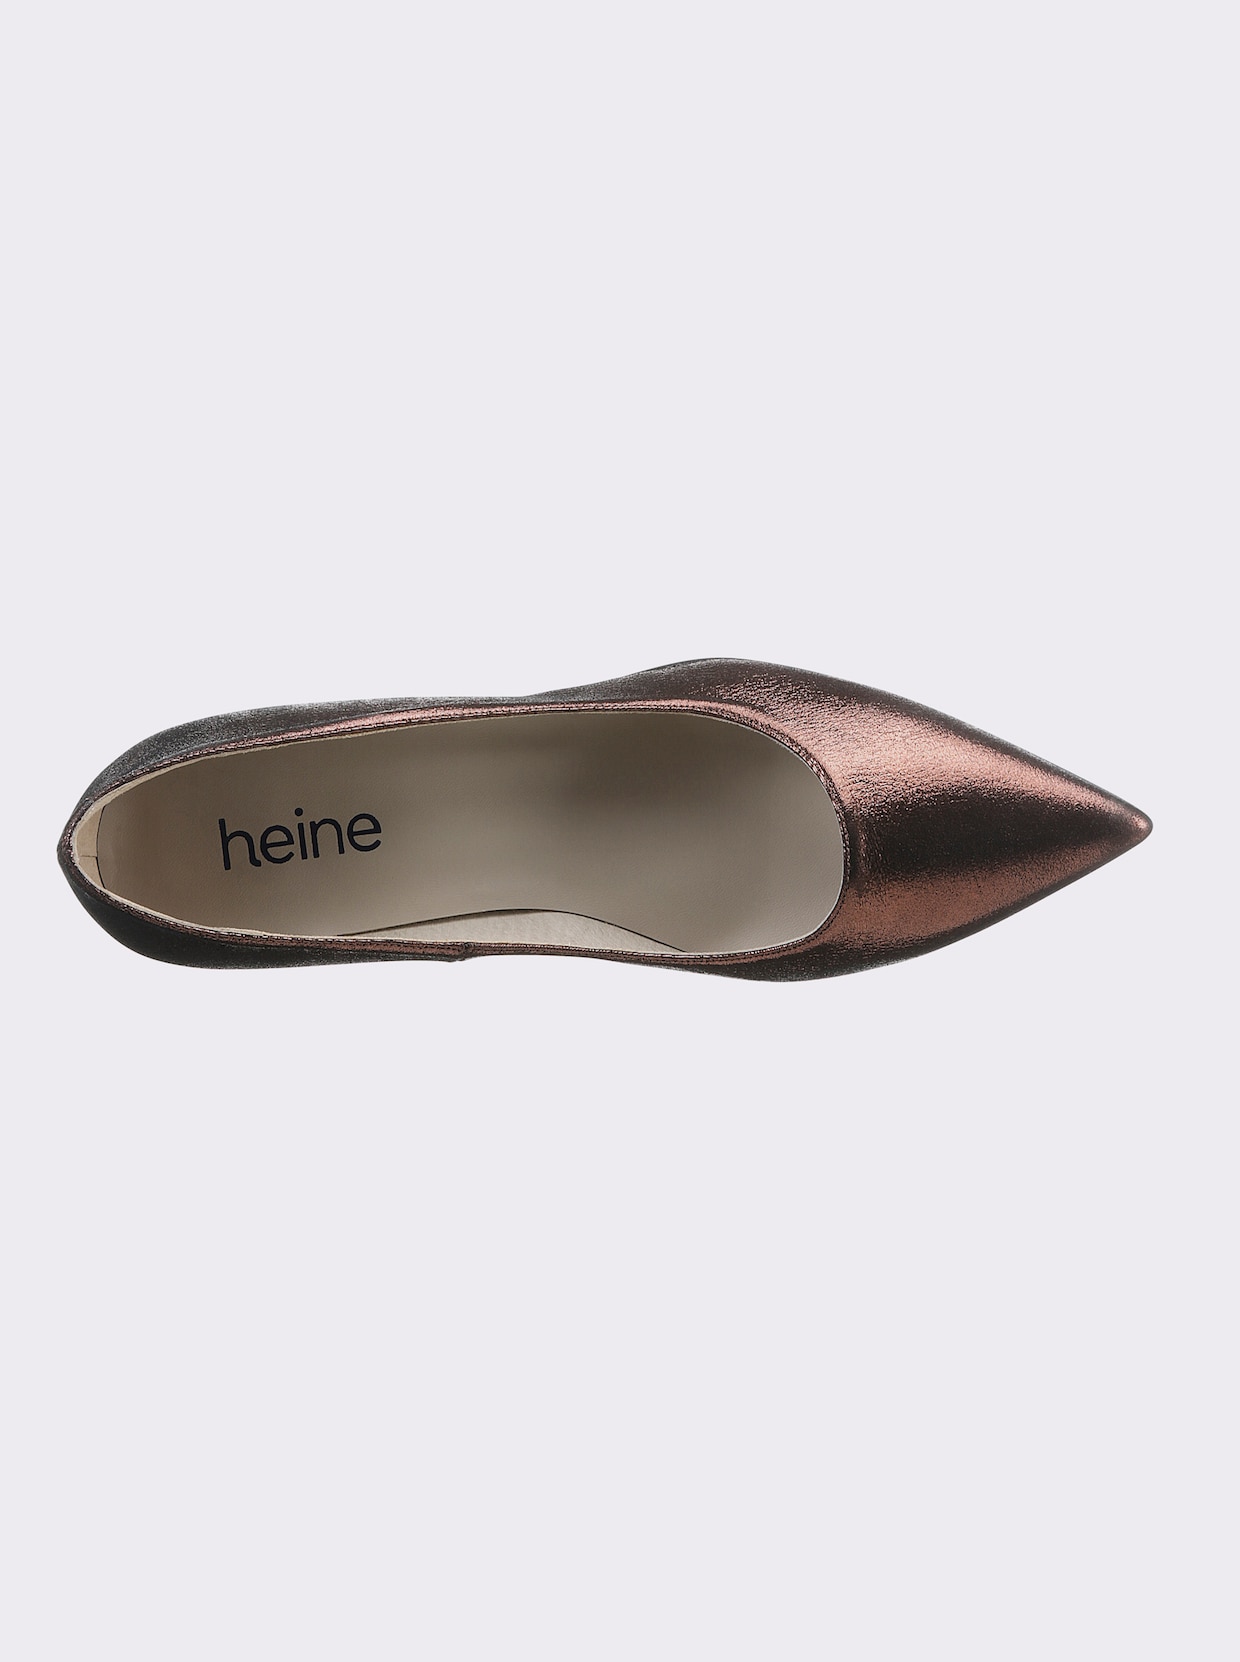 heine Pumps - braun-metallic